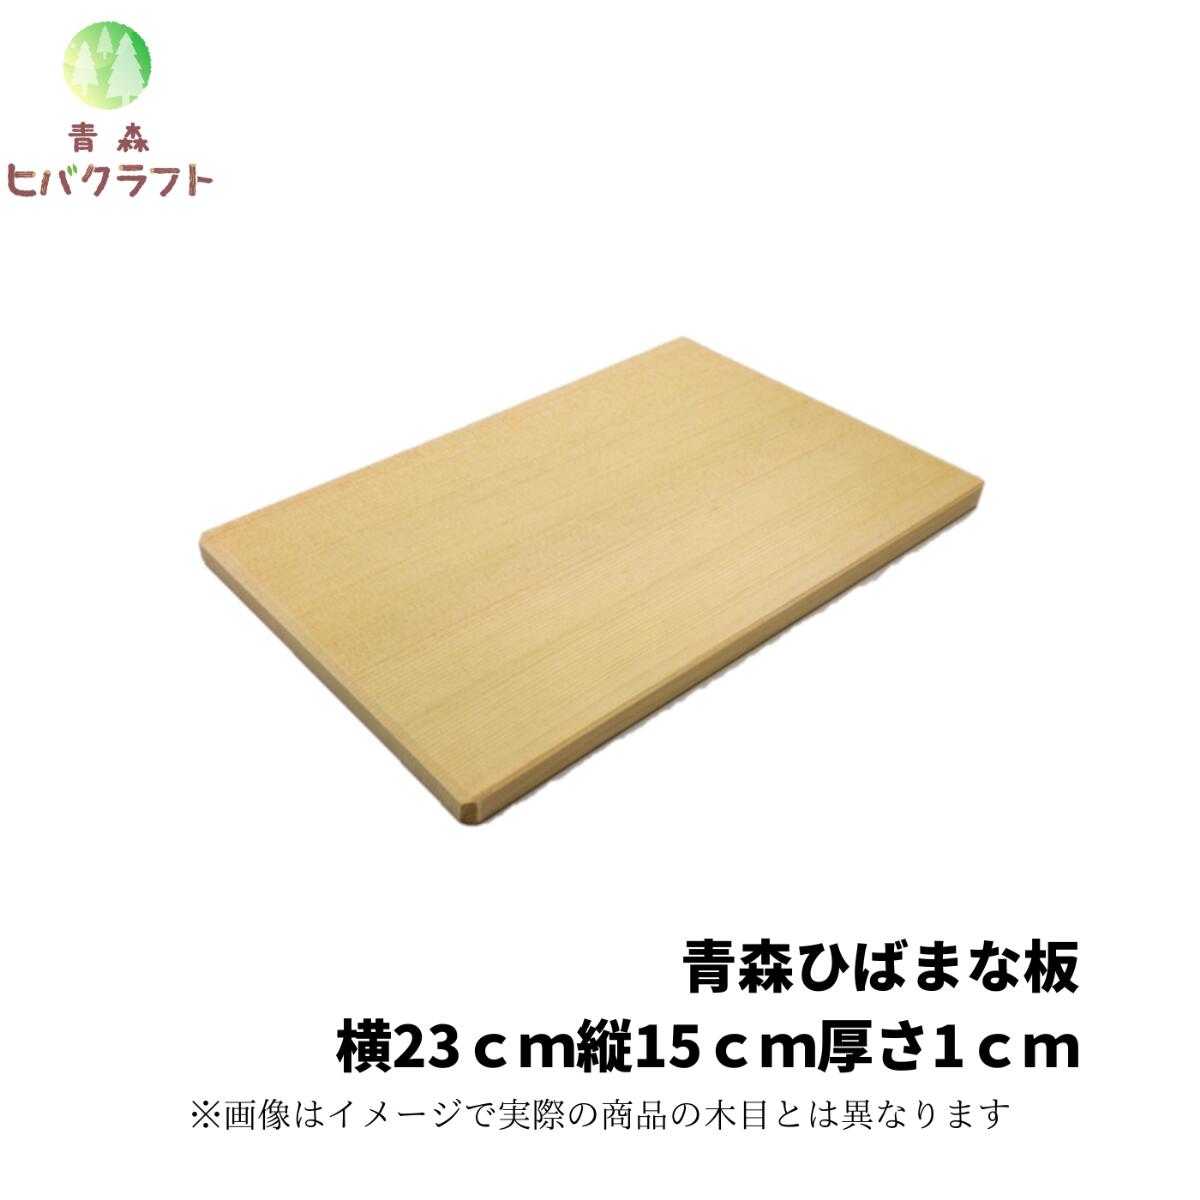 青森 ひば 薄型 まな板 23cm×15cm厚さ1.0cm ヒバ 木製 一枚板 小さい 抗菌 薄い 軽量 軽い 柾目 送料無料 キッチン …